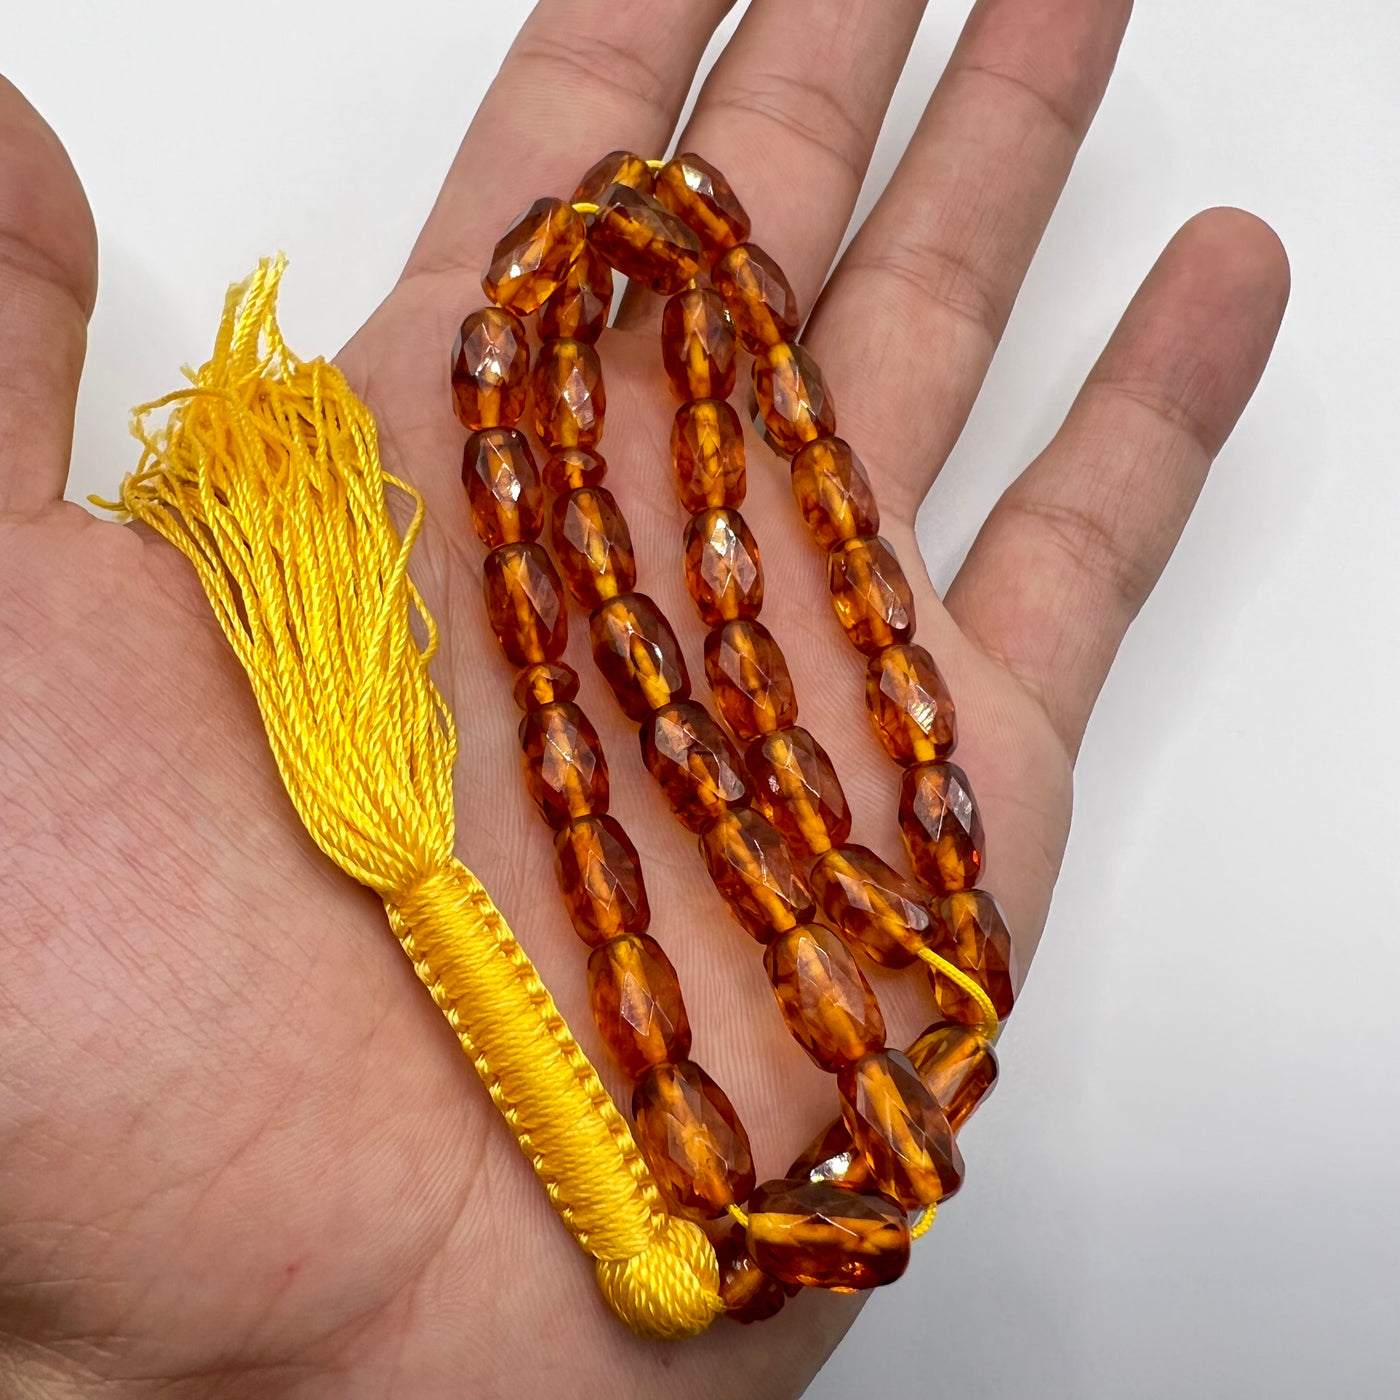 Oval Cut Pressed Amber Baltic Tasbih Beads - Al Ali Gems